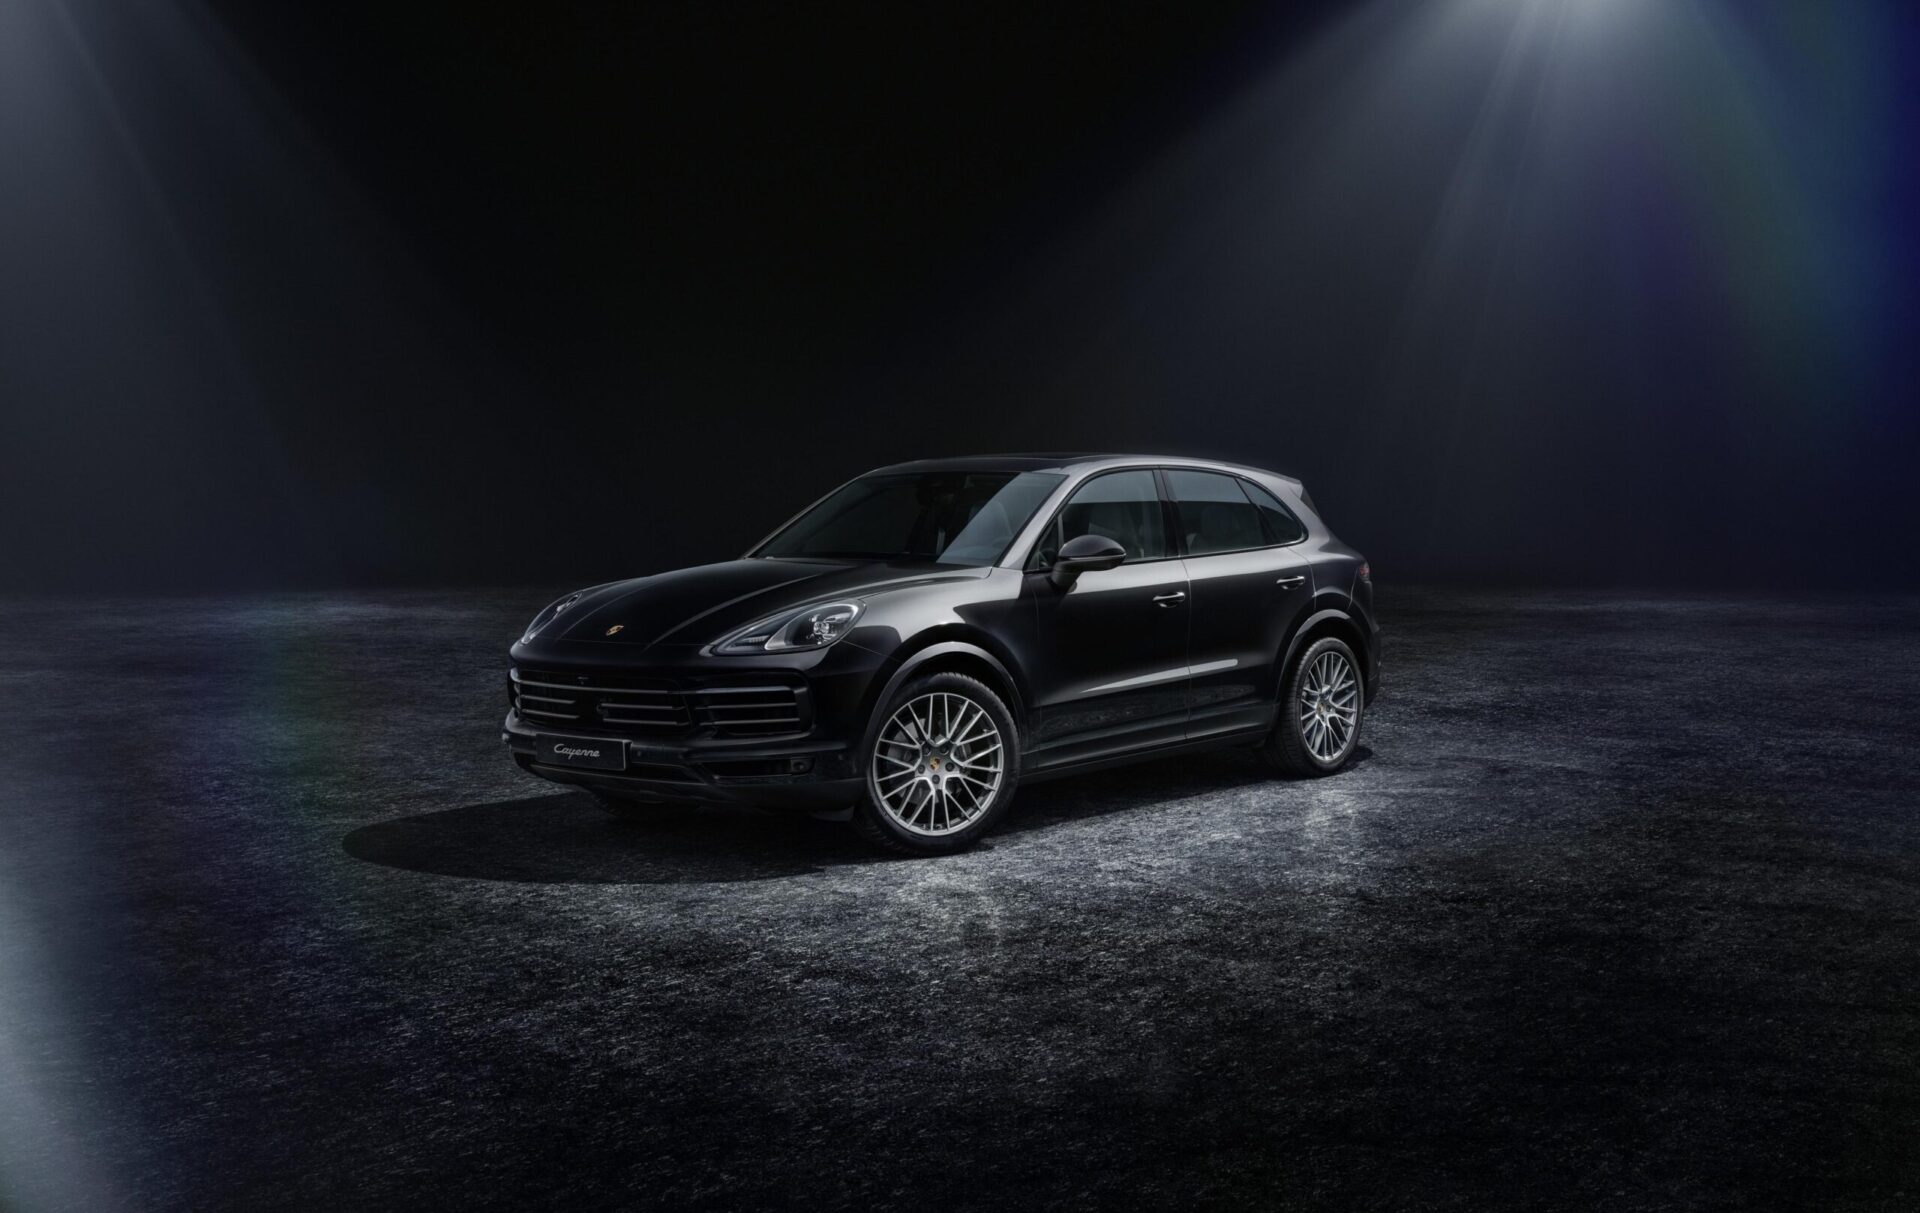 Компания Porsche поставит в Россию особую версию Cayenne Platinum Edition